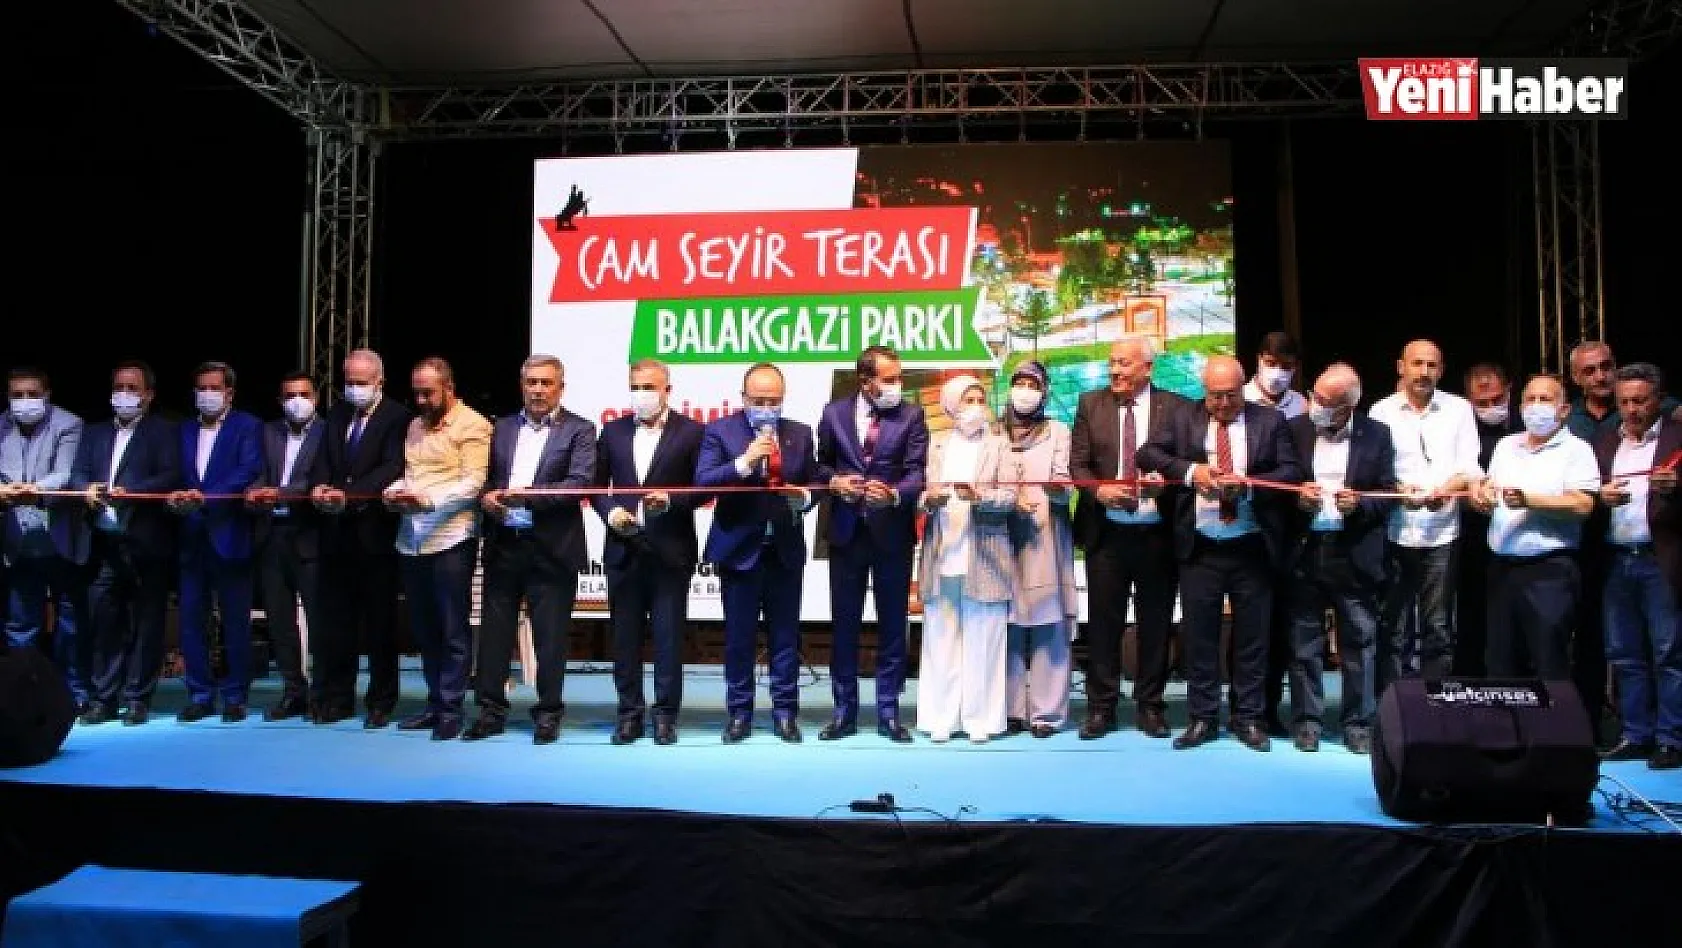 Balakgazi Parkı ve Cam Seyir Terasının Açılışı Yapıldı